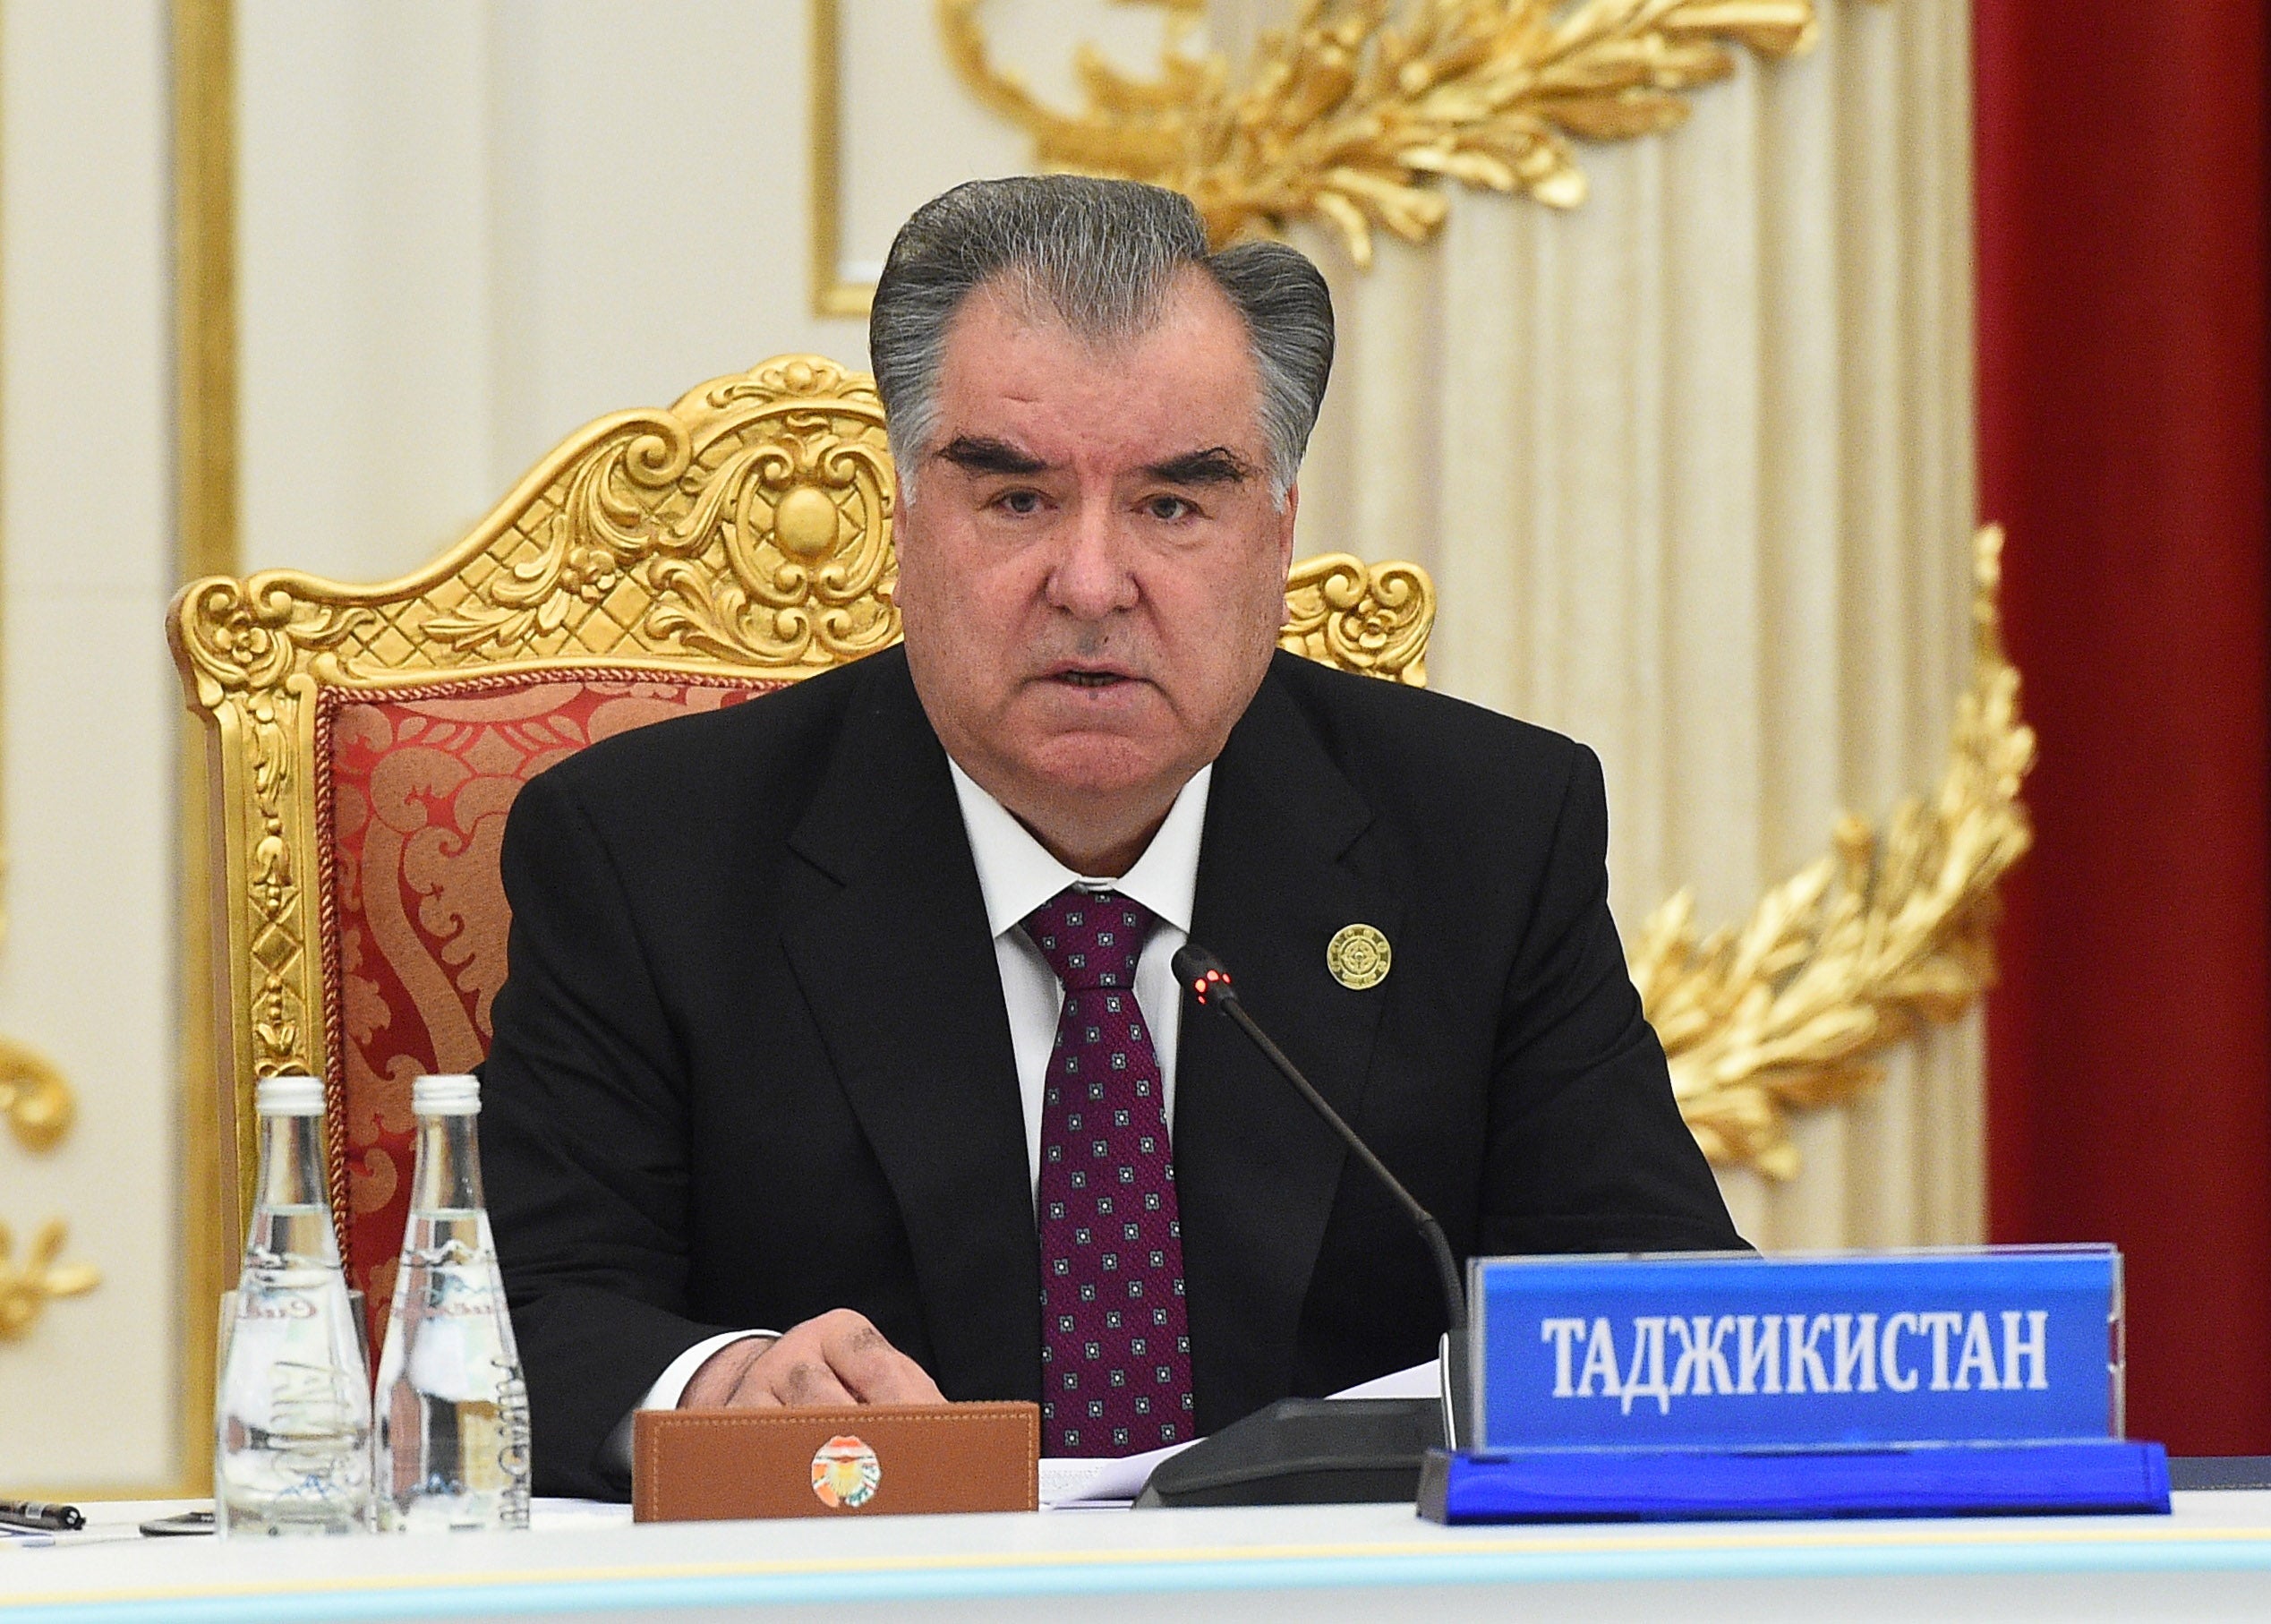 Президент Таджикистана Эмомали Рахмон участвует на встрече Совета коллективной безопасности Организации Договора о коллективной безопасности (ОДКБ) в Душанбе, Таджикистан, 16 сентября 2021 г.